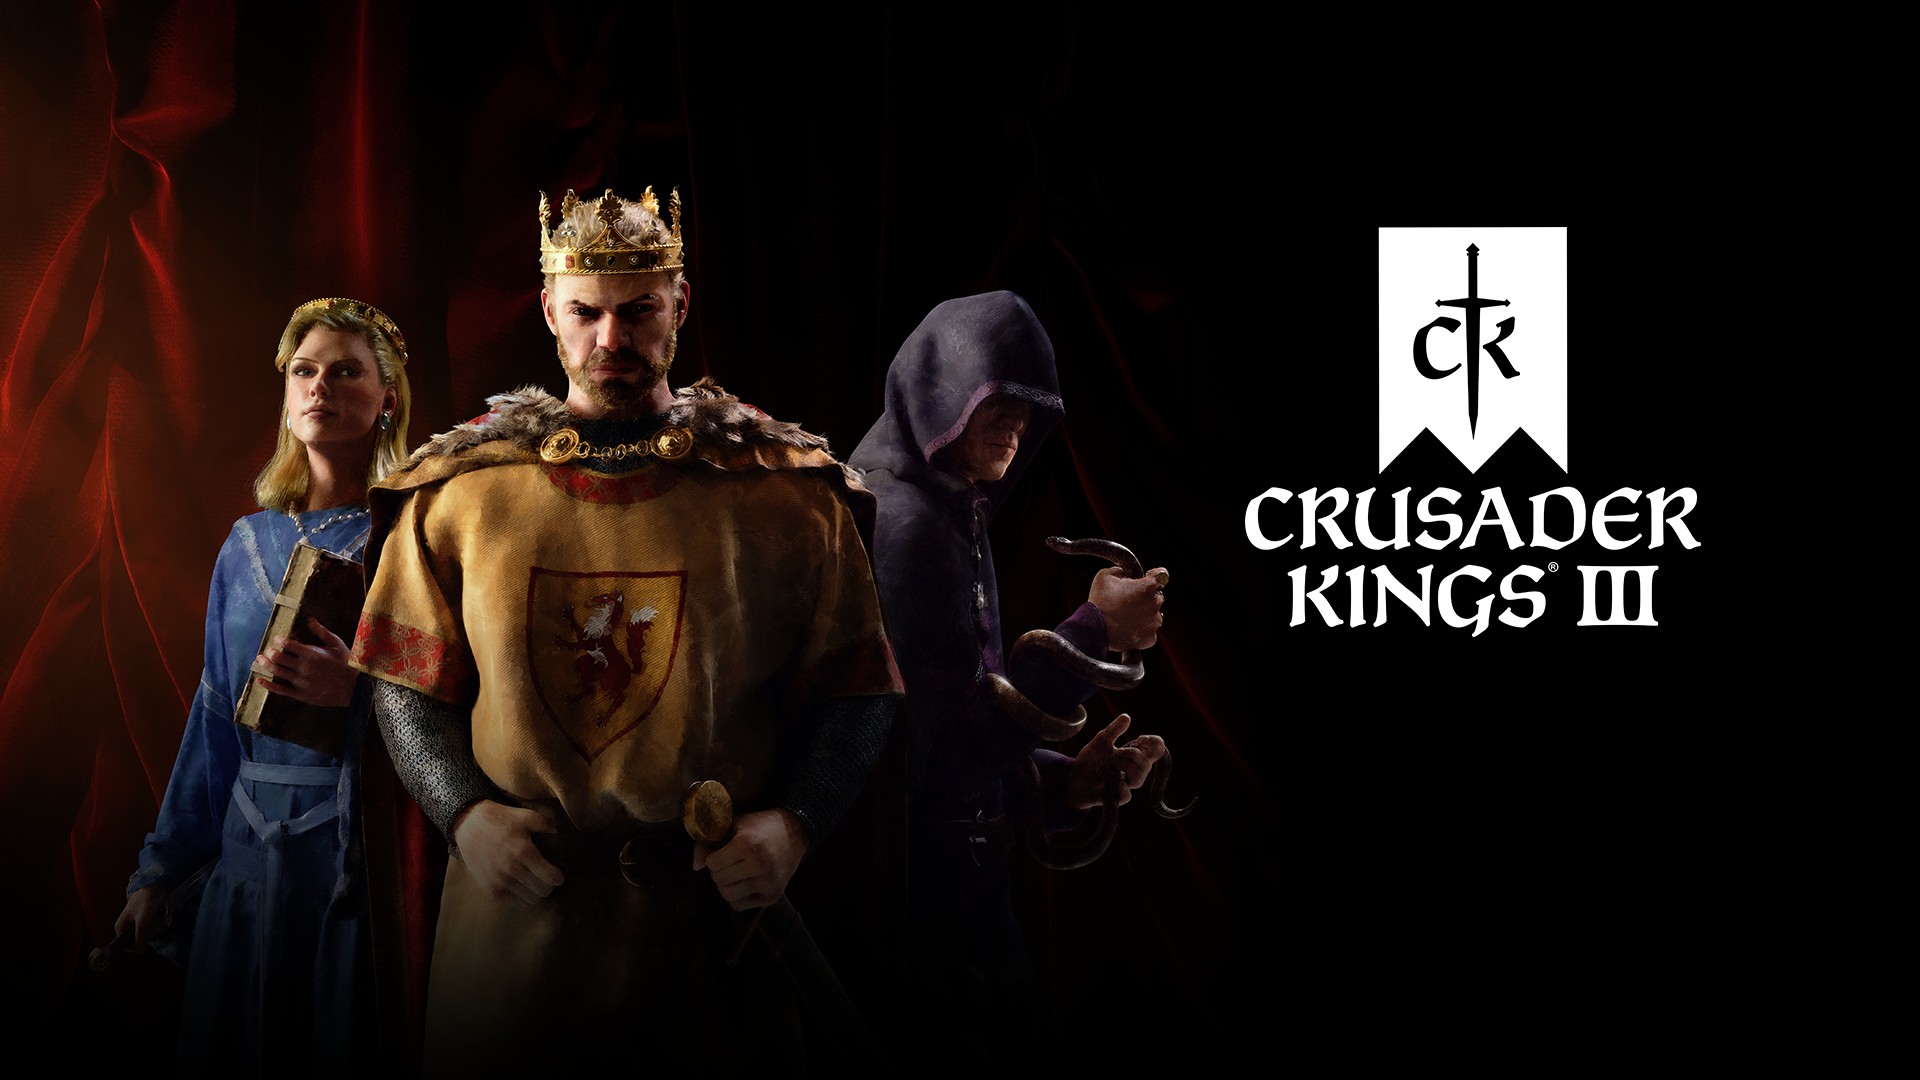 الملوك الصليبيون يركبون إلى المجد في 1 سبتمبر 30